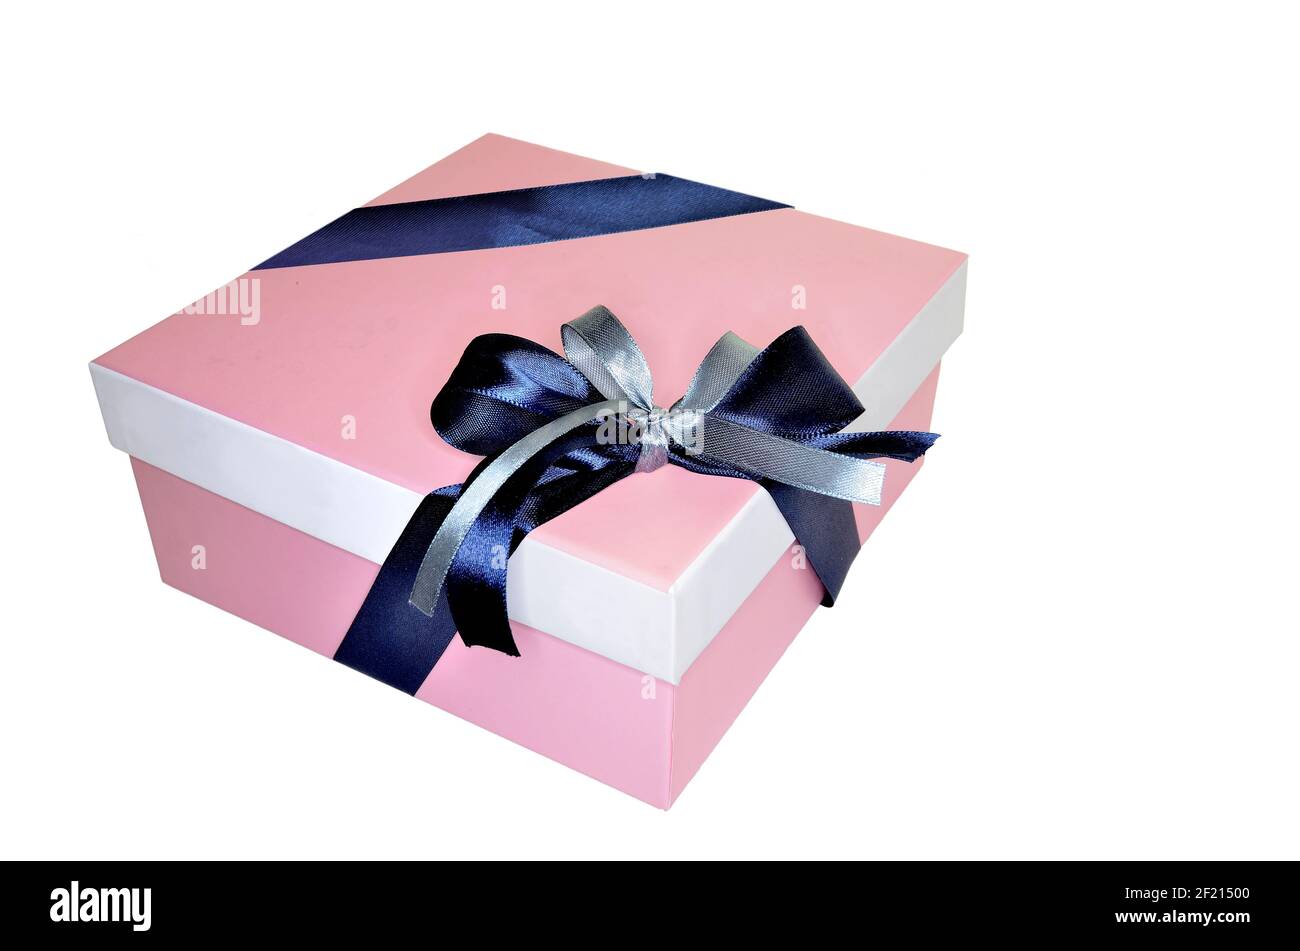 Rosa quadratische Geschenkbox mit Schleife aus zwei Seidenbändern blau und  silberfarben gebunden, isoliert auf weißem Hintergrund. Dekorative  Verpackung Box für ein Geschenk für Stockfotografie - Alamy